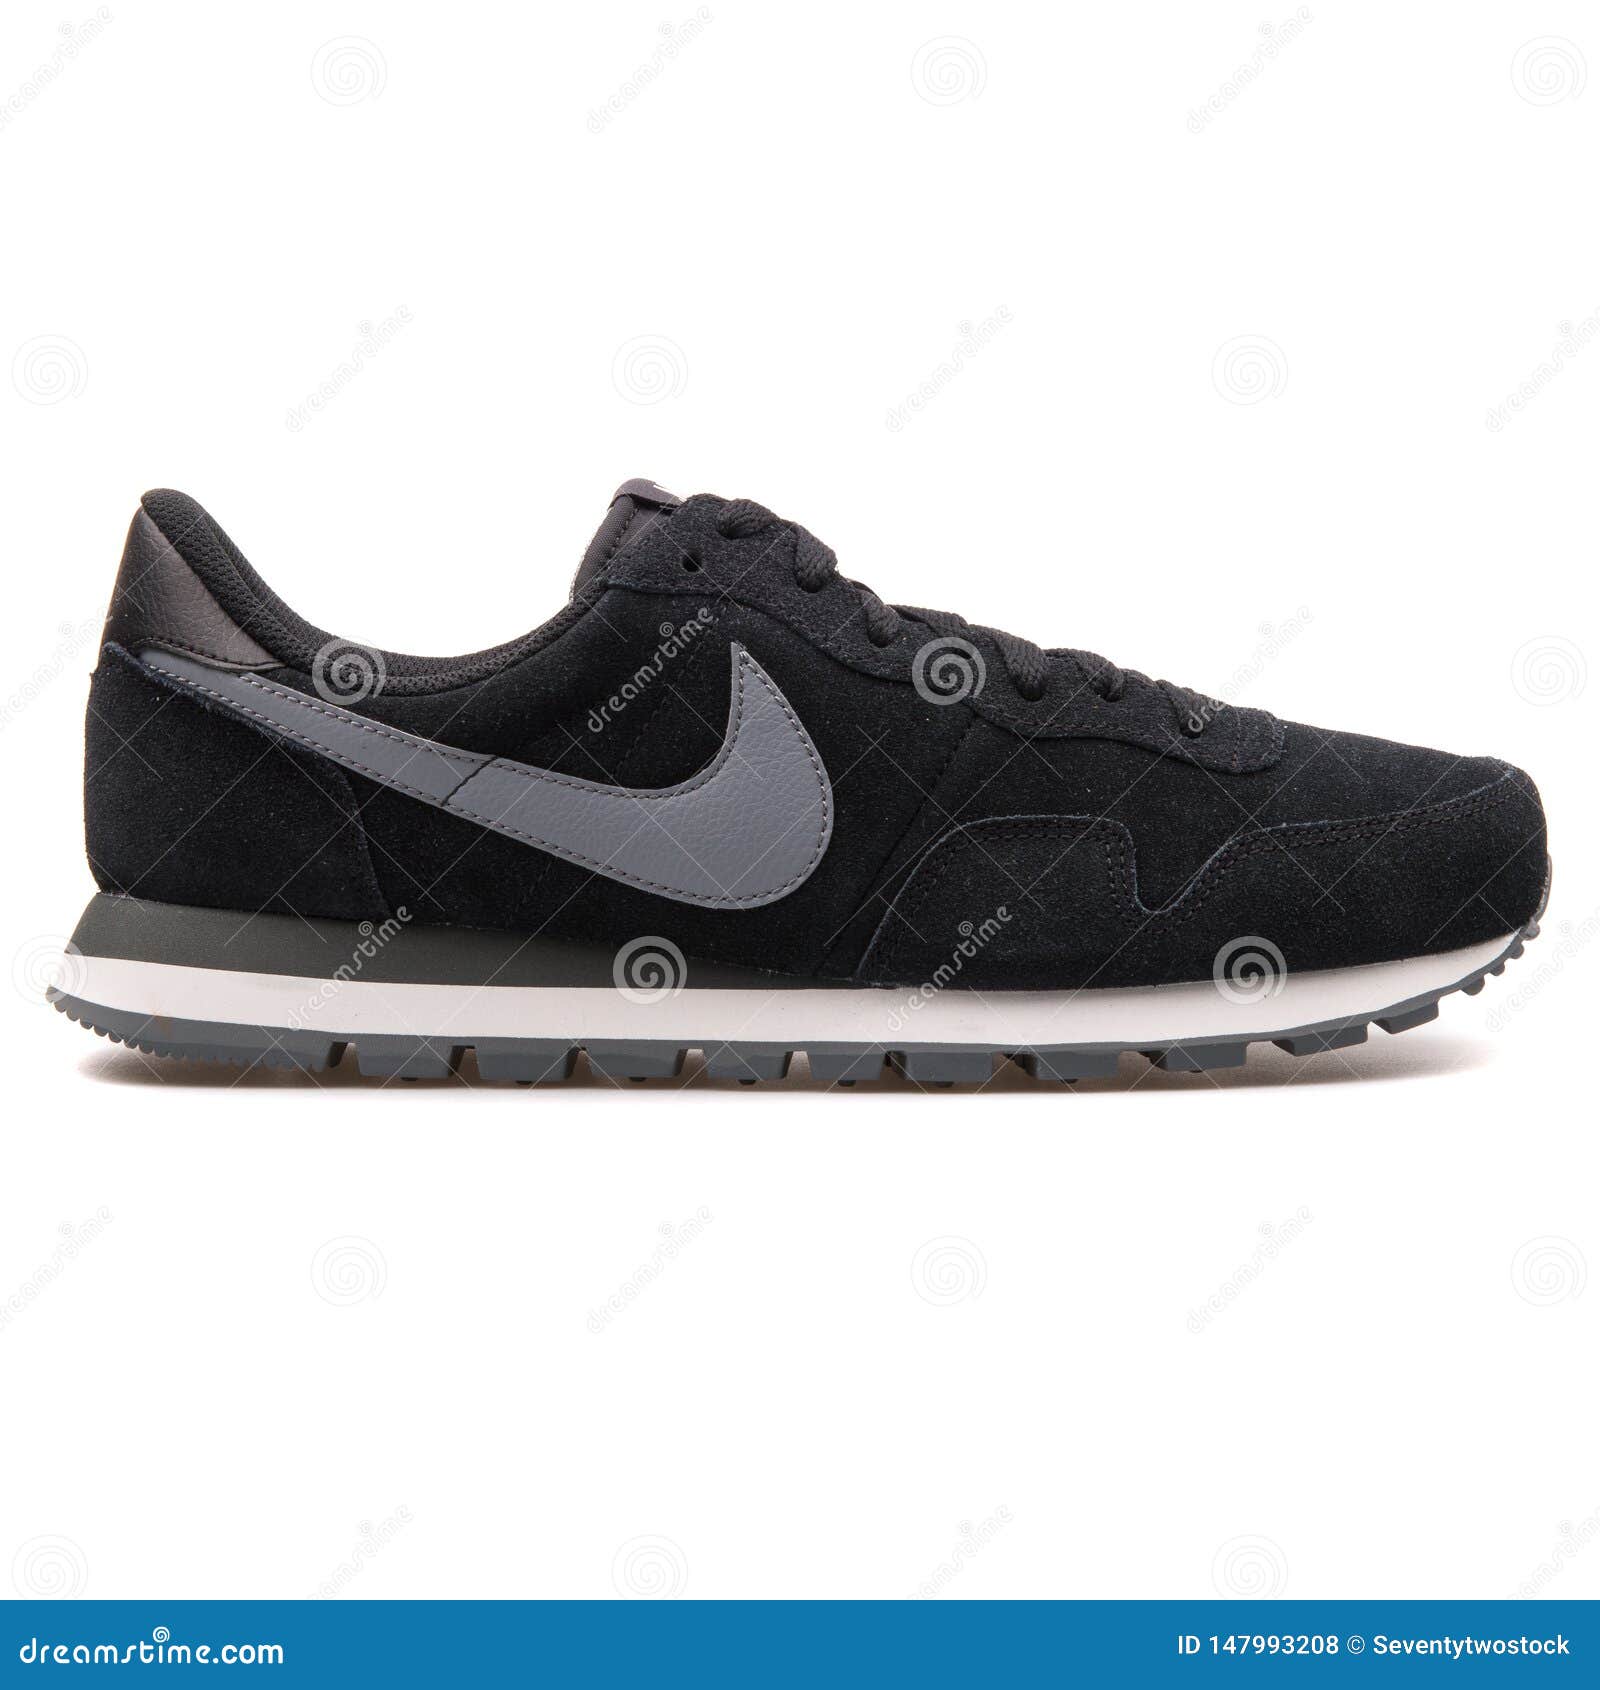 Nike Pegasus 83 Zapatillas De Deporte Negras Y Grises De Cuero de archivo editorial - Imagen de ejercicio, accesorios: 147993208